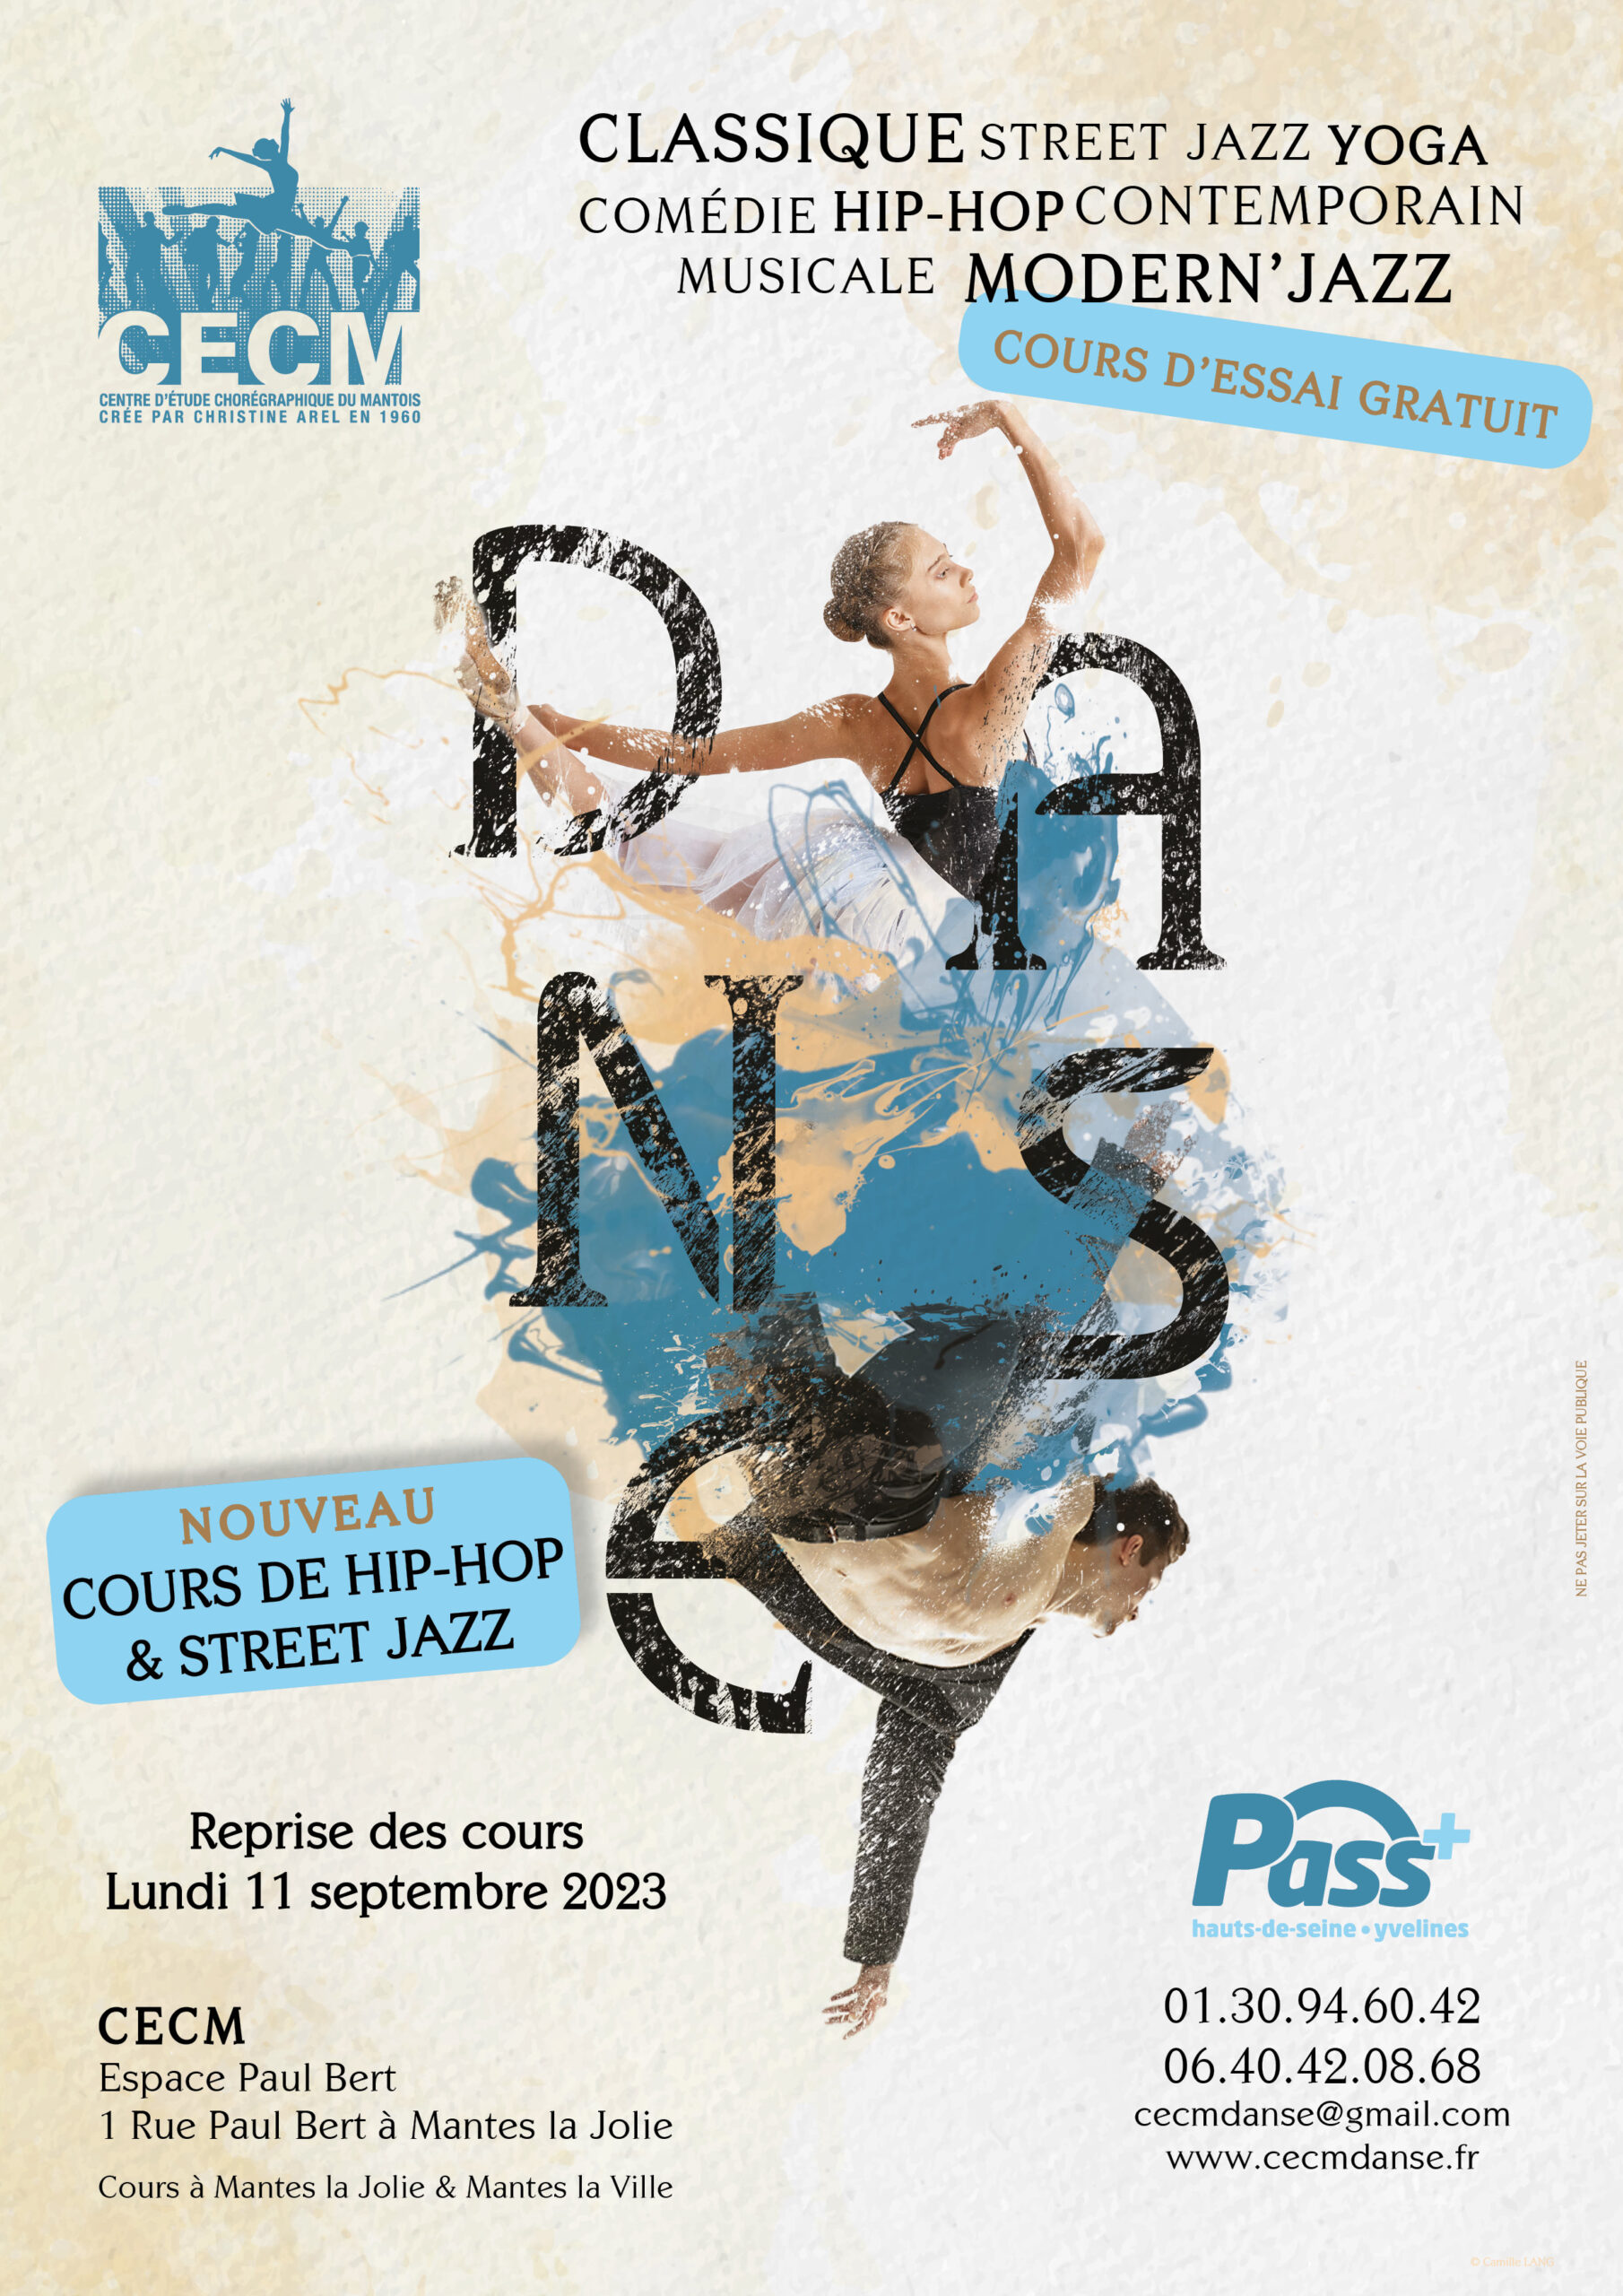 CECM ecole de danse classique modern jazz contemporain comédie musicale Hip-Hop Street Jazz mantes la jolie 78